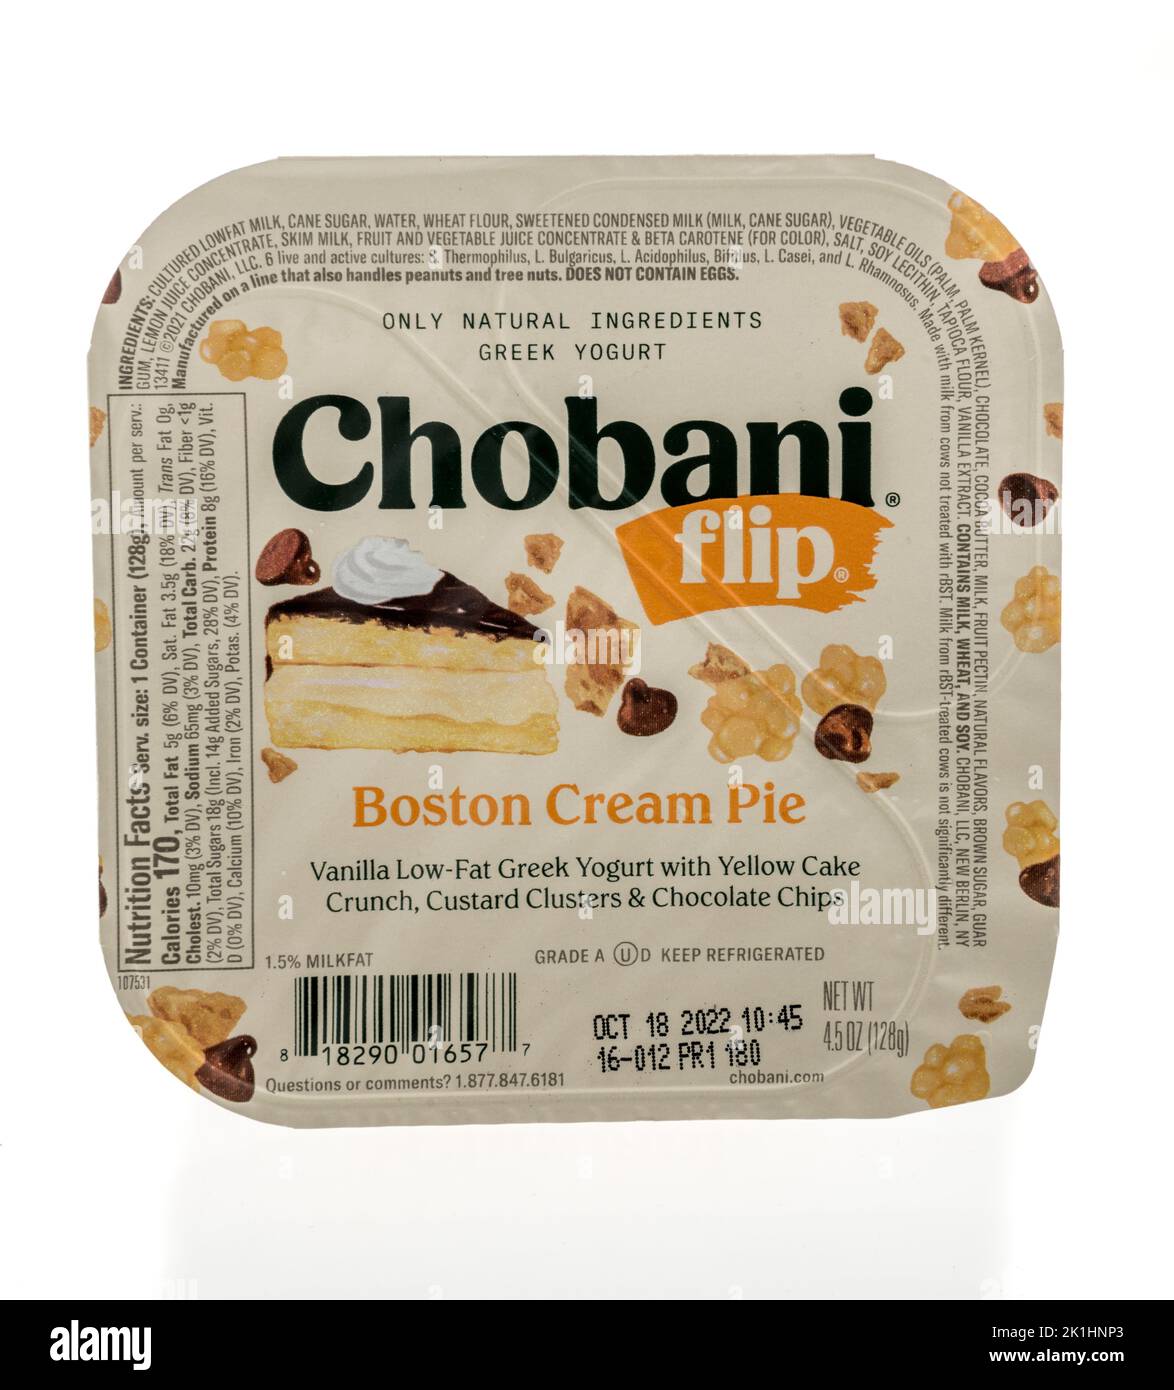 Winneconne, WI - 18 de septiembre de 2022: Un paquete de Chobani flip Boston crema pastel de yogur griego sobre un fondo aislado. Foto de stock